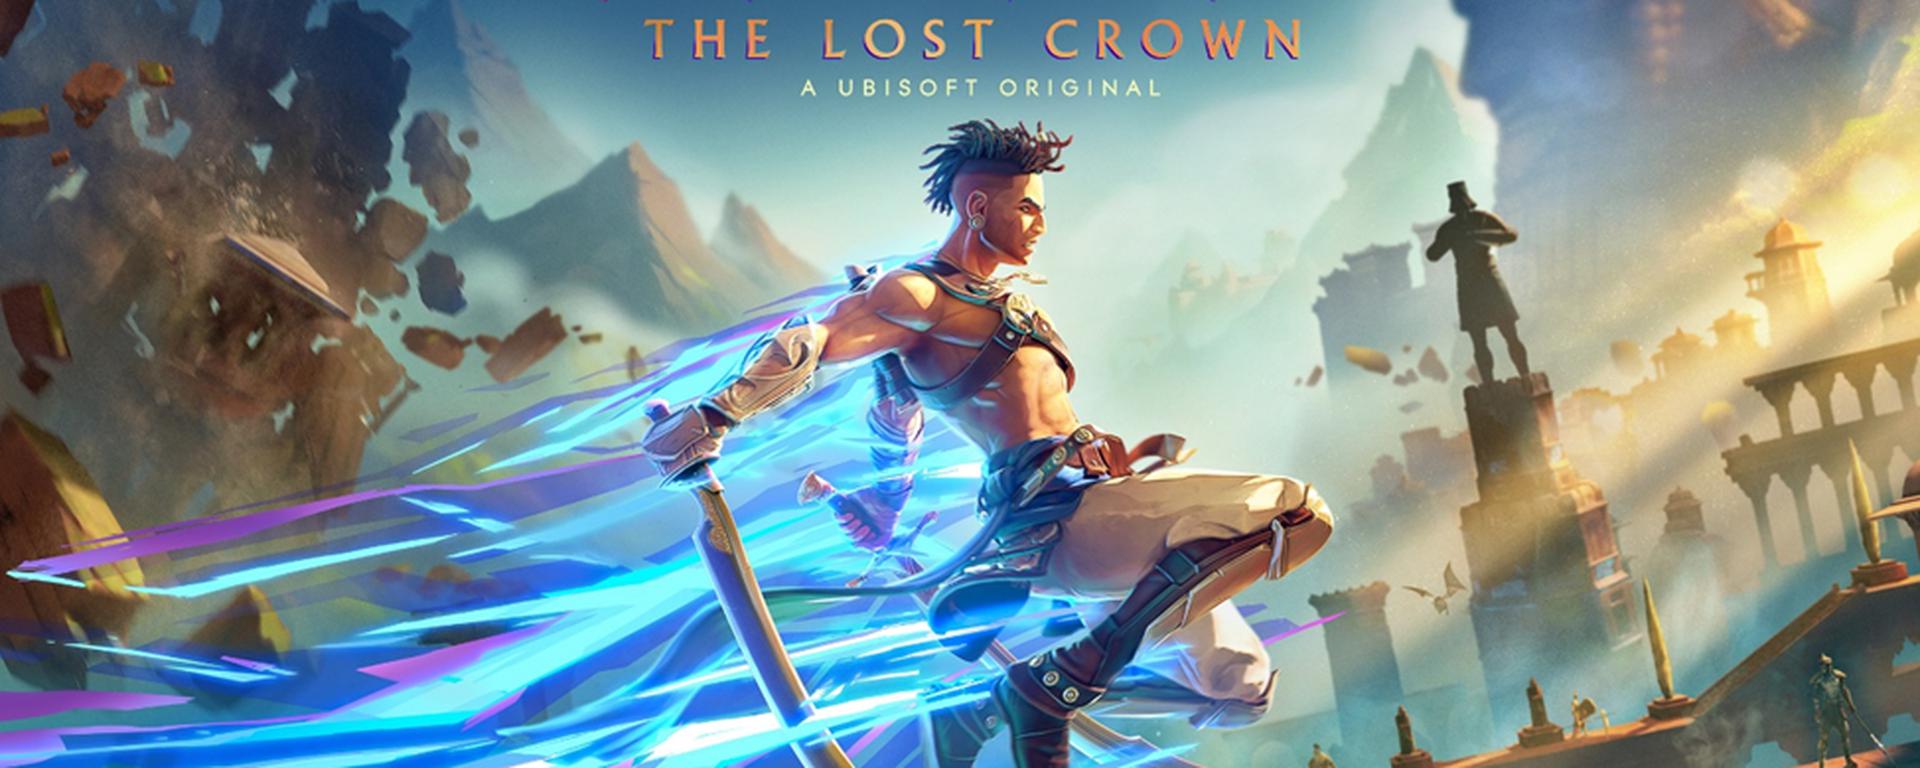 Prince of Persia: The Lost Crown: las cuatro claves del videojuego de acción de Ubisoft [RESEÑA]